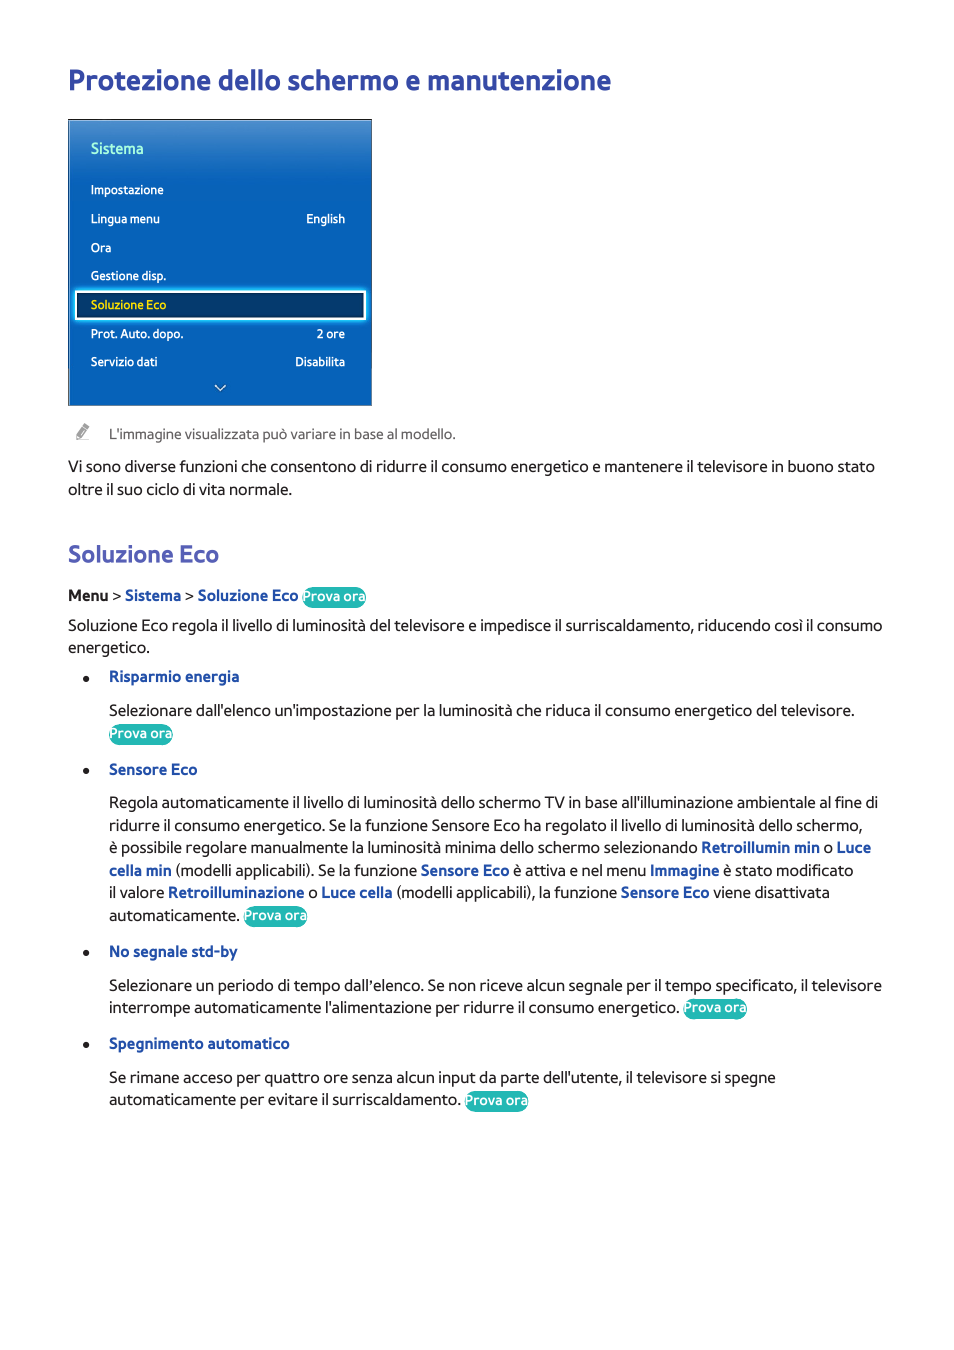 Protezione dello schermo e manutenzione, 97 soluzione eco, Soluzione eco | Samsung SEK-1000 Manuale d'uso | Pagina 104 / 184